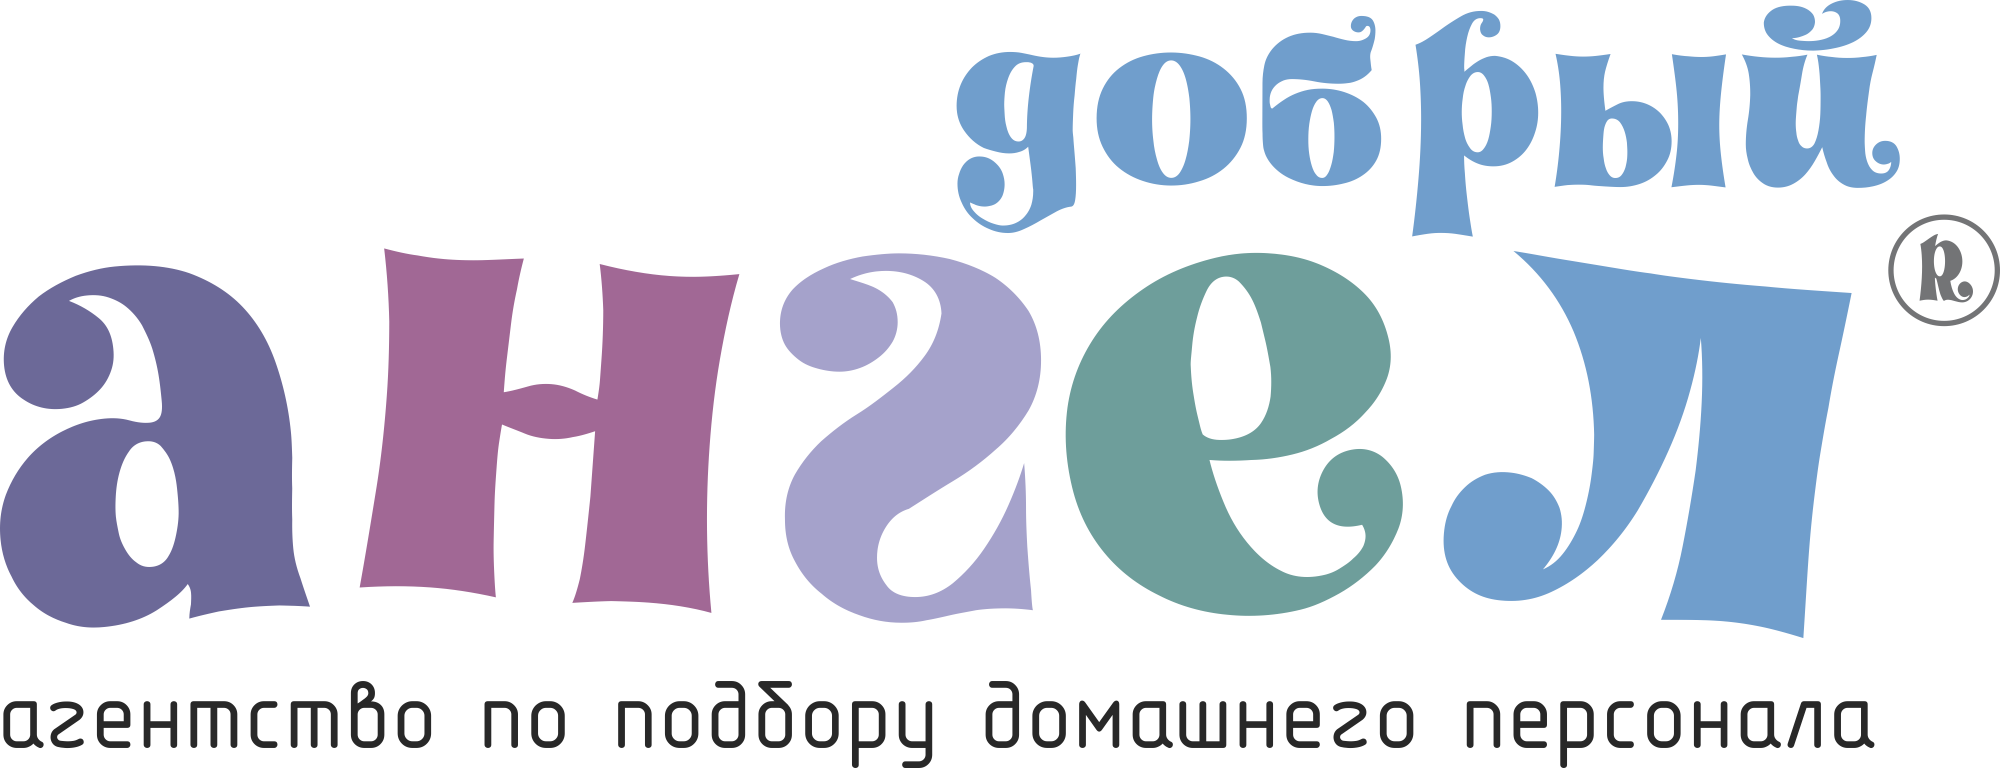 Компания Добрый Ангел — подбор нянь, домработниц, личных водителей и другого домашнего персонала в Москве и области